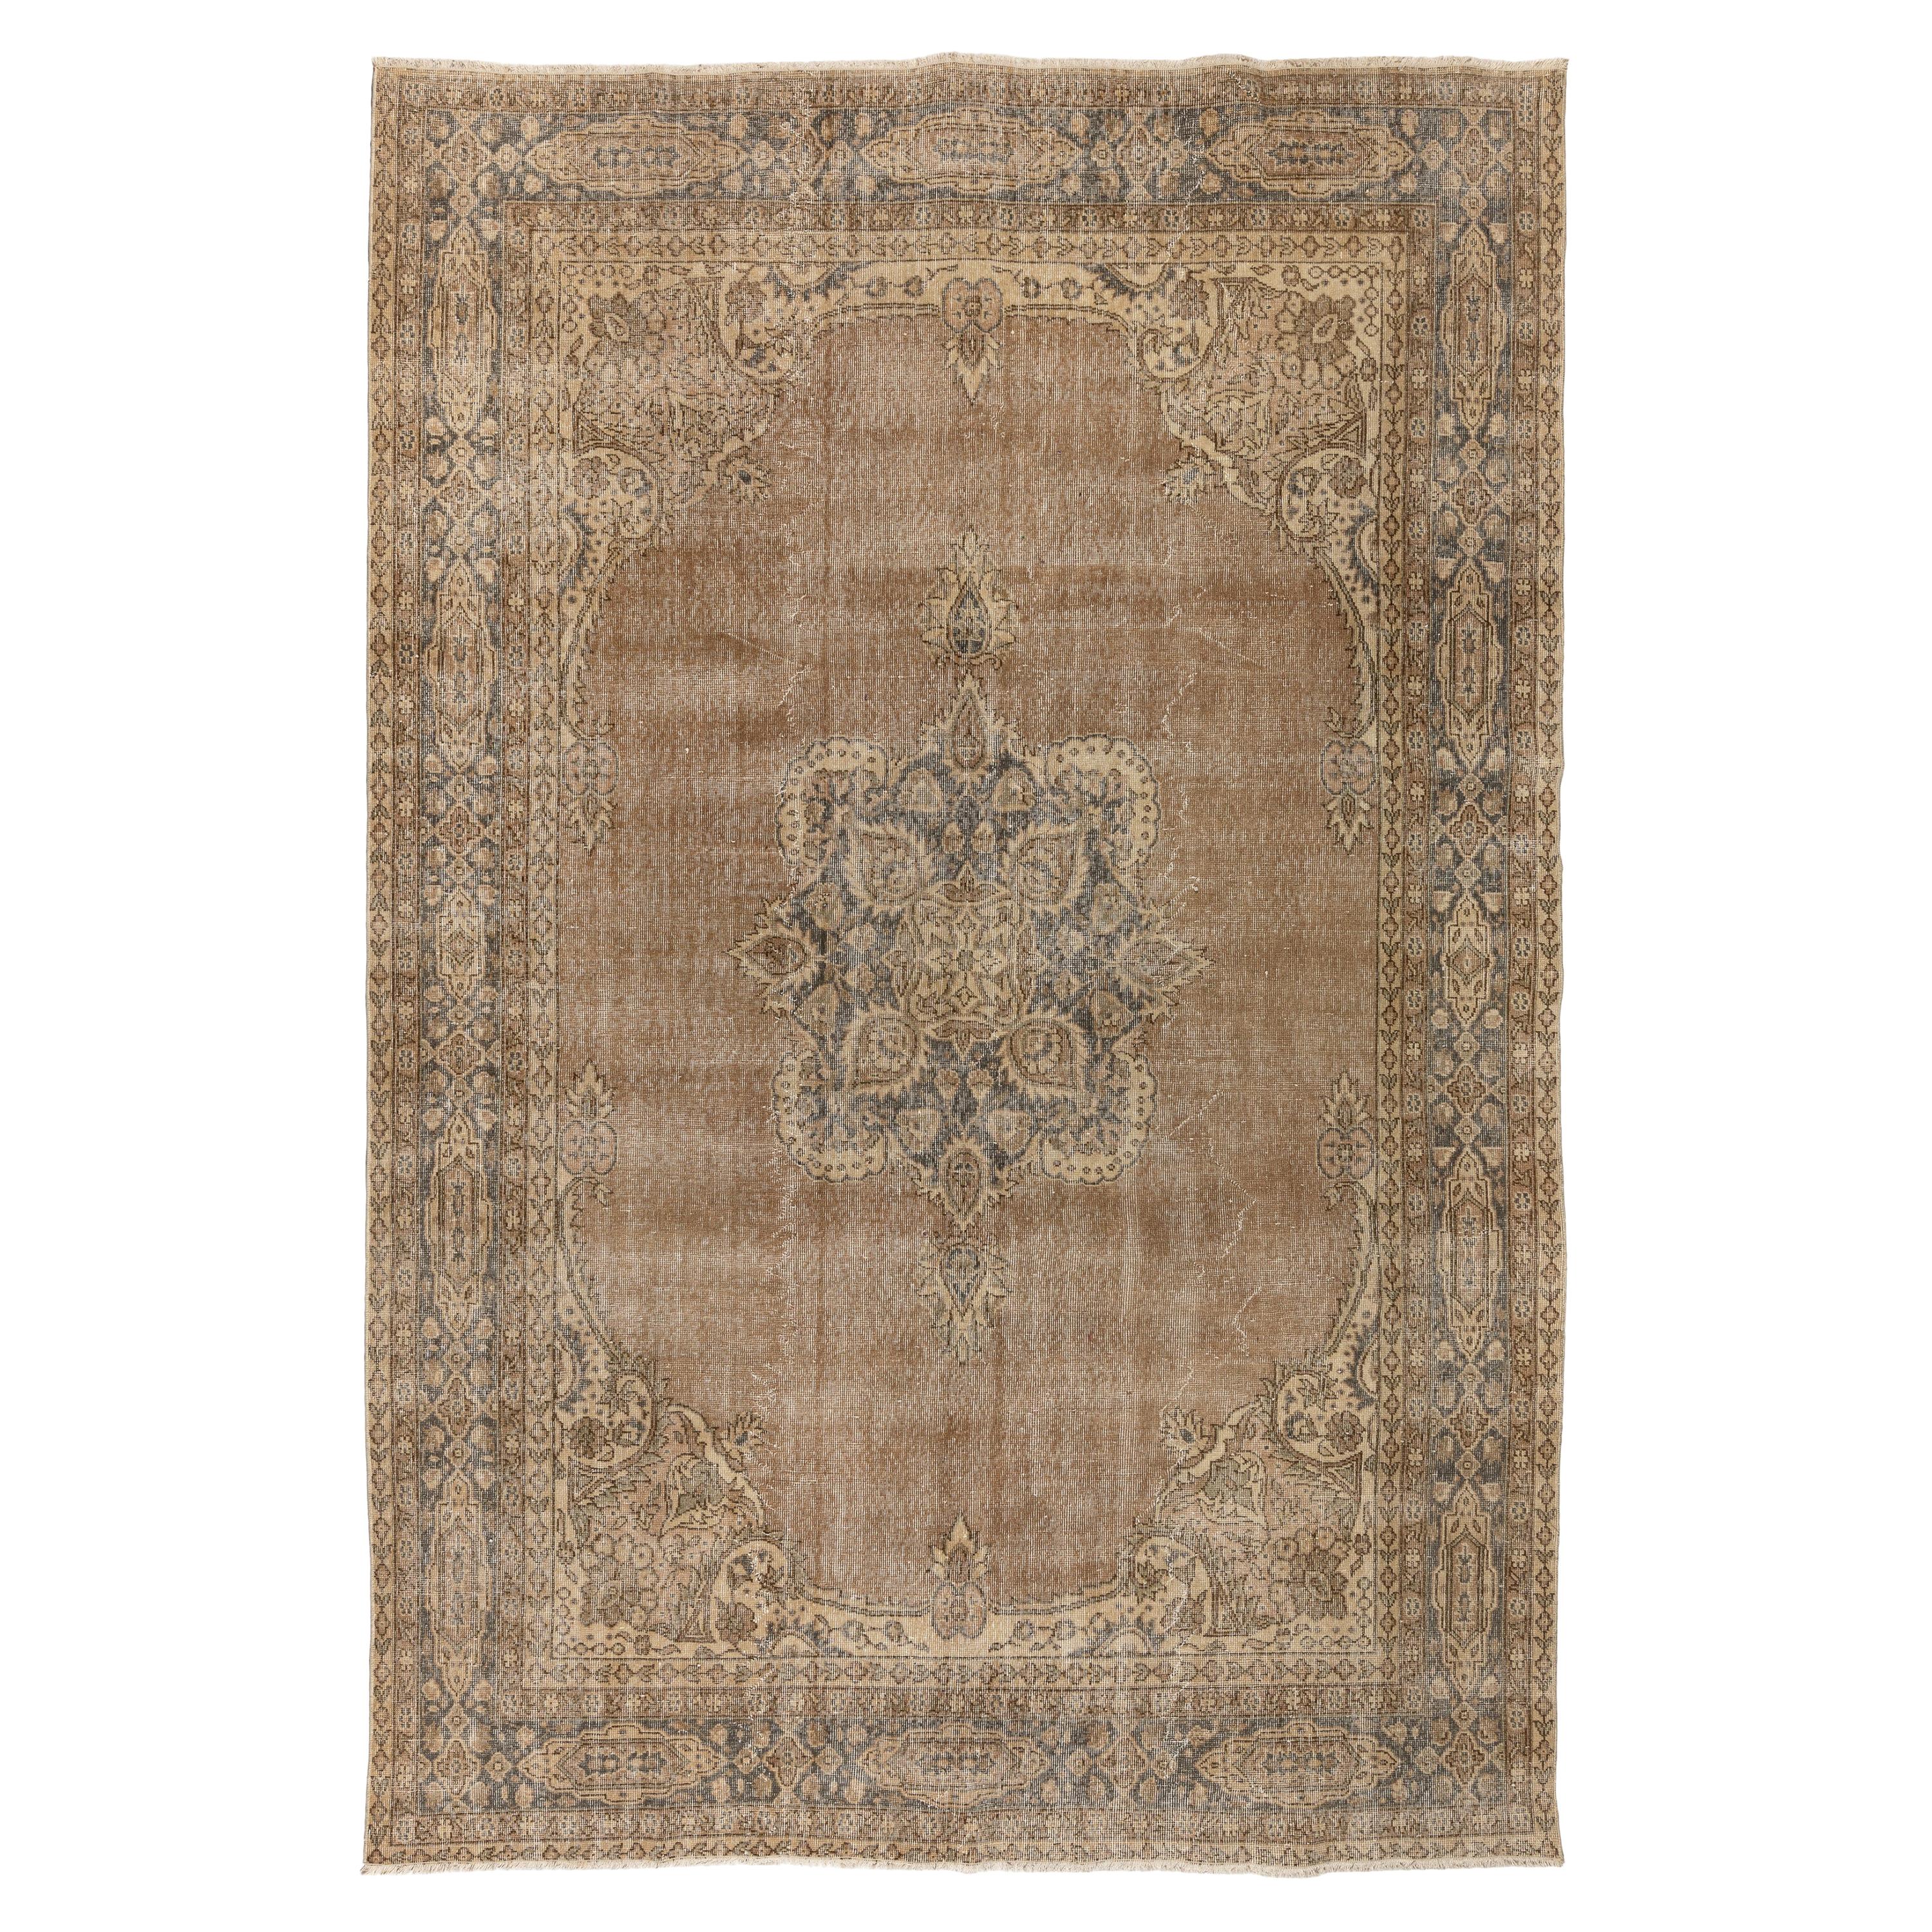 Tapis turc vintage de 7,6 x 10,5 m. Revêtement de sol en laine fine. Tapis oriental. 